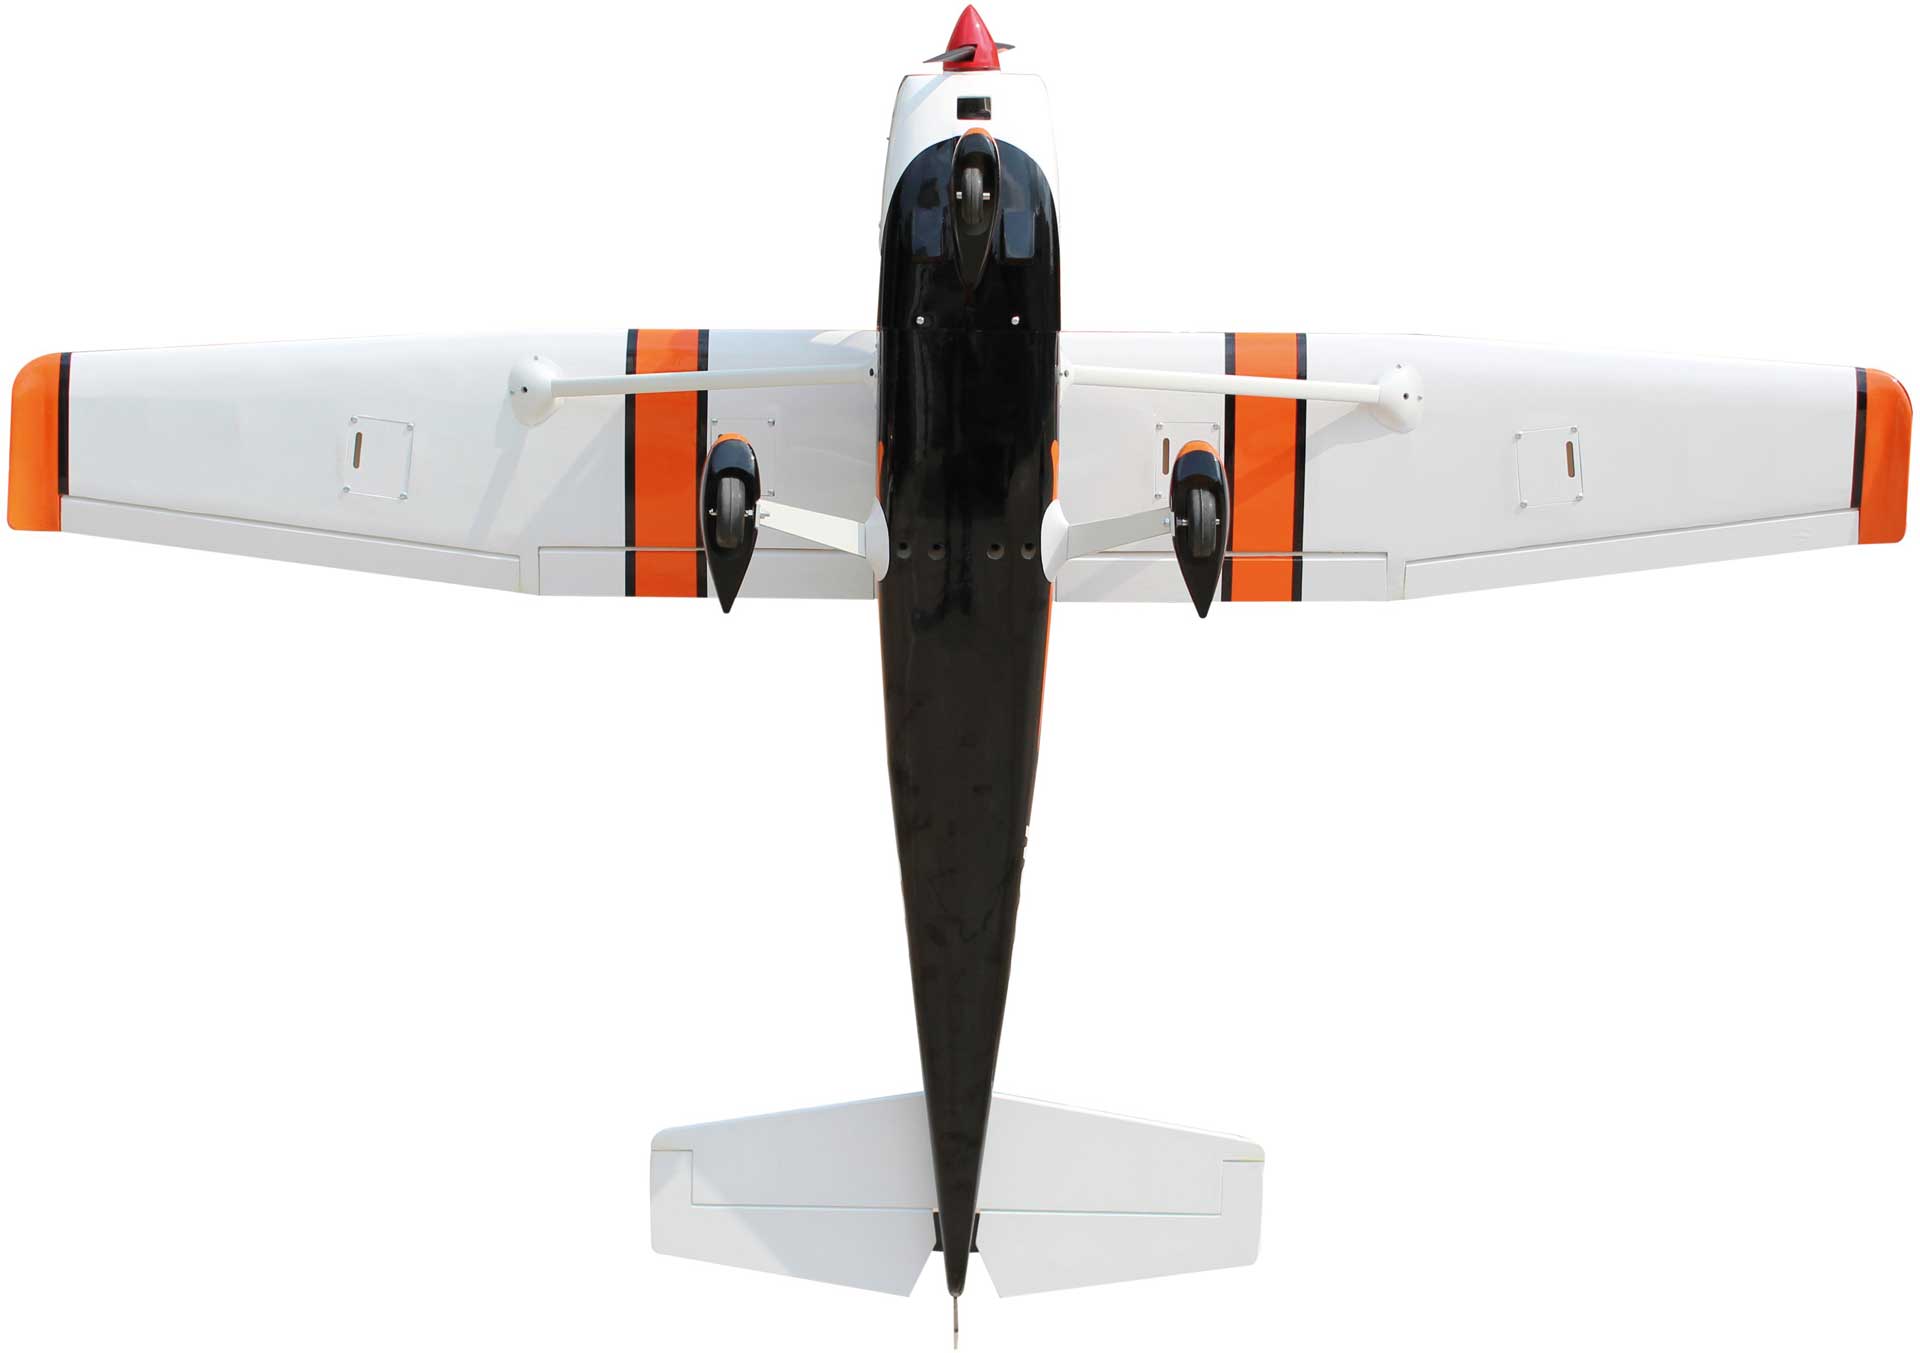 Cessna 182 Turbo Skylane Seagull Models